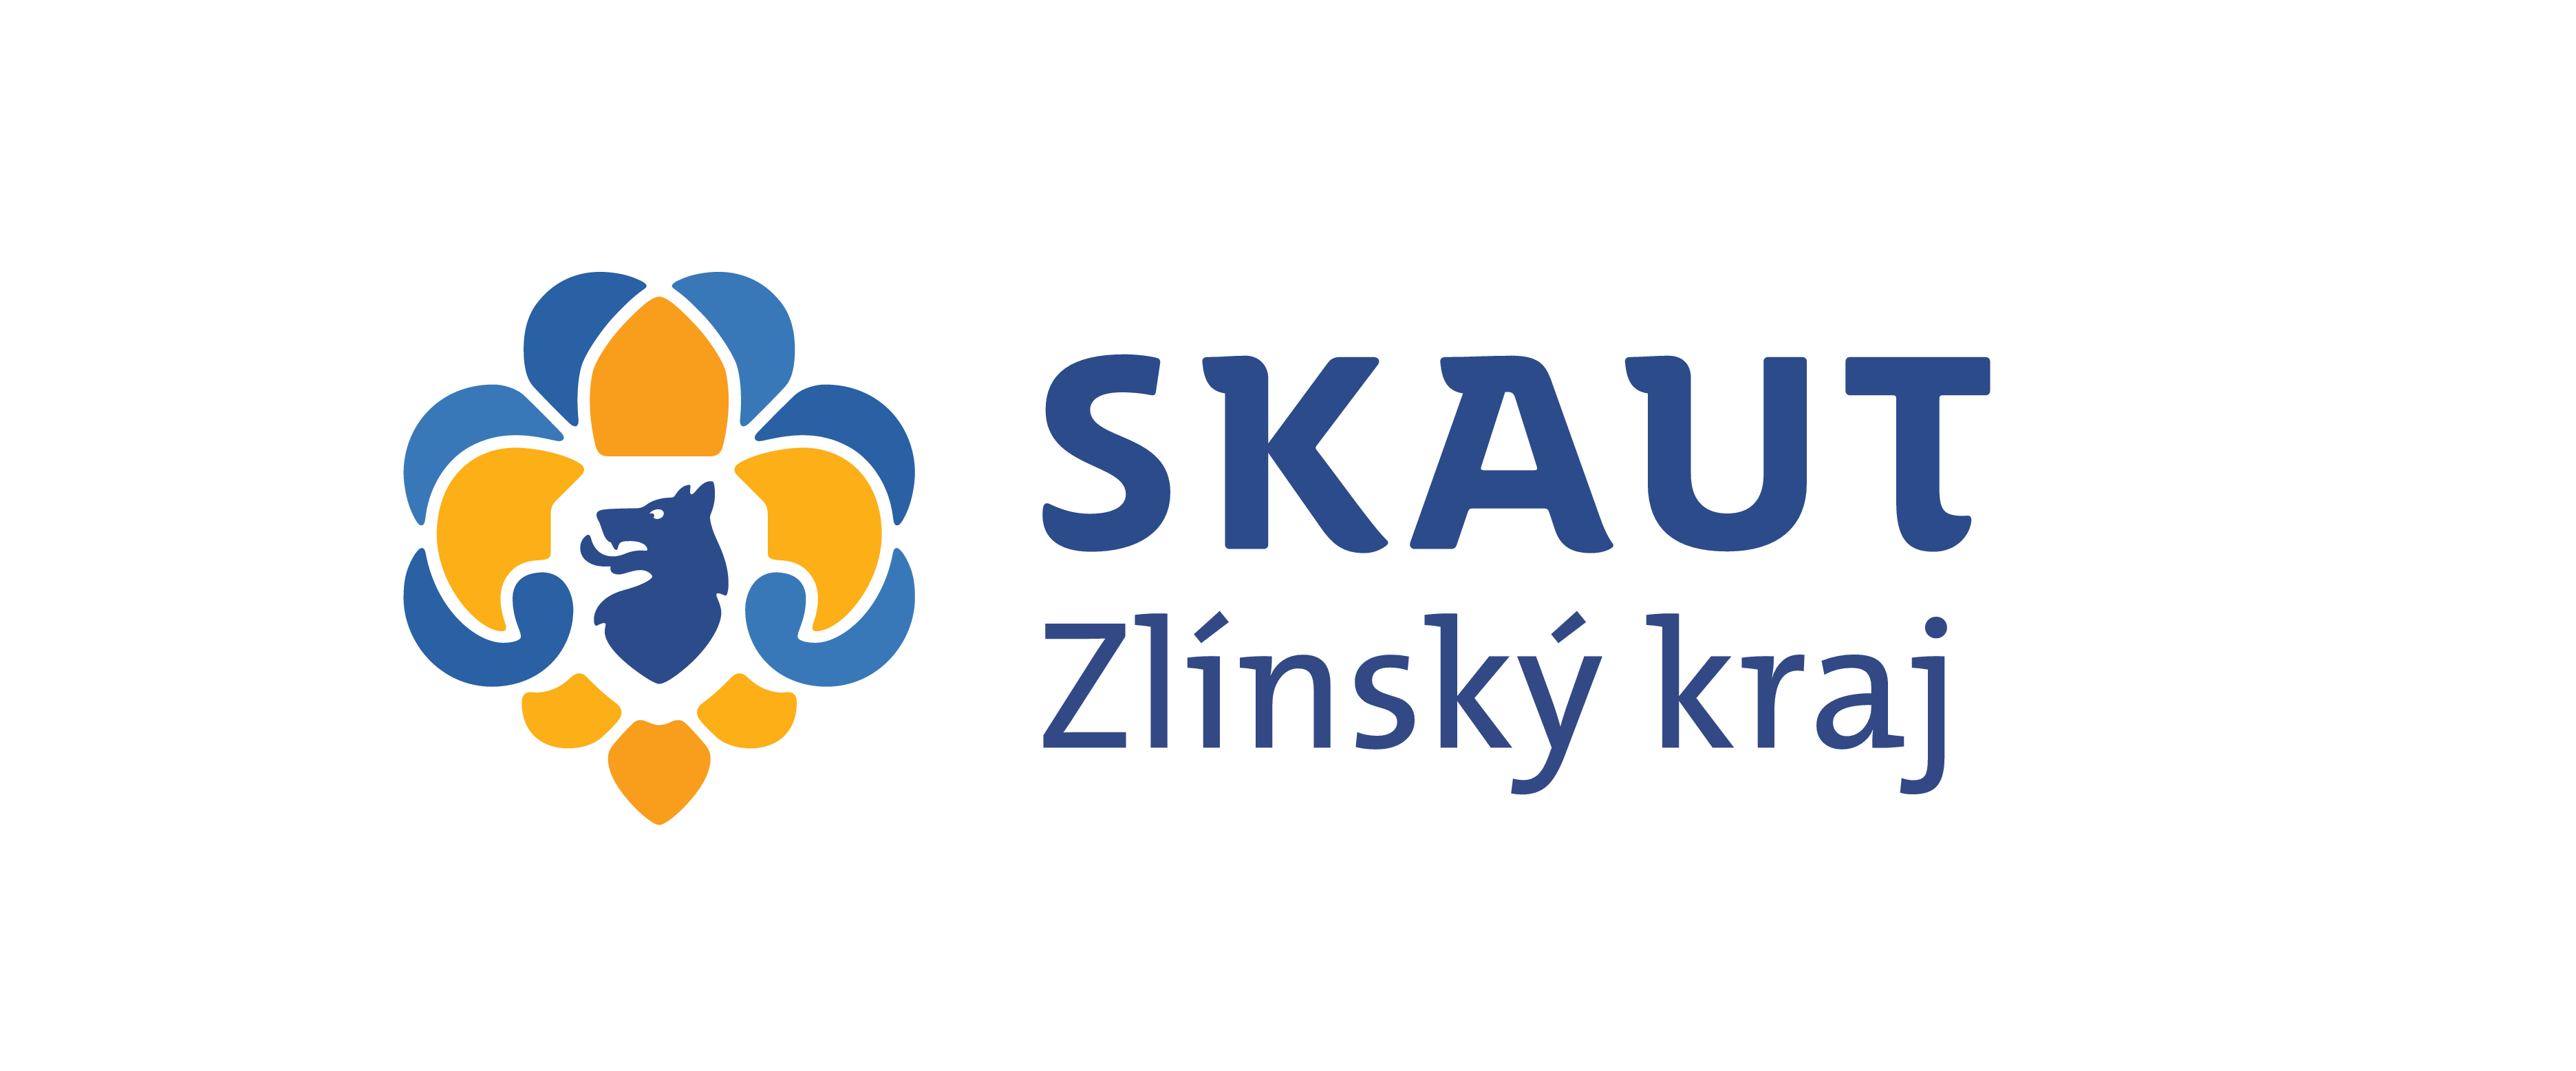 Junák – český skaut, Zlínský kraj, z. s.